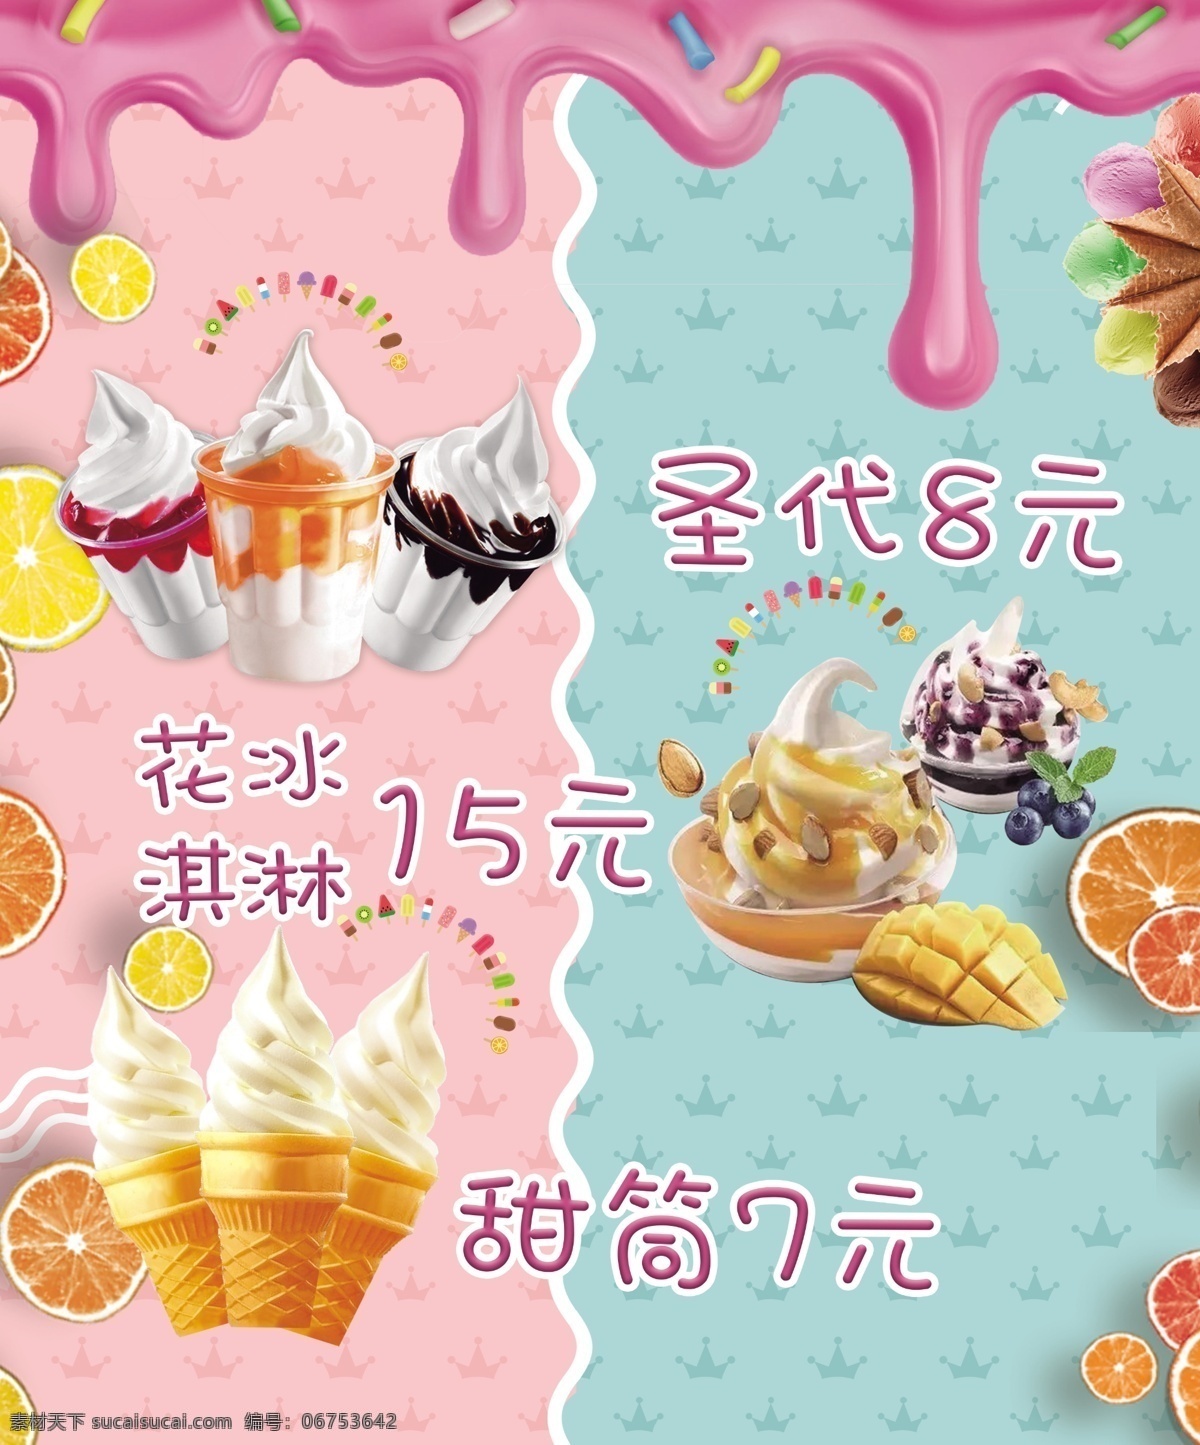 冰淇淋海报 冰淇淋 圣代 甜筒 花冰淇淋 华夫 华夫新地 海报 小清晰海报 蓝色冰淇淋 粉色冰淇淋 冰淇淋装饰